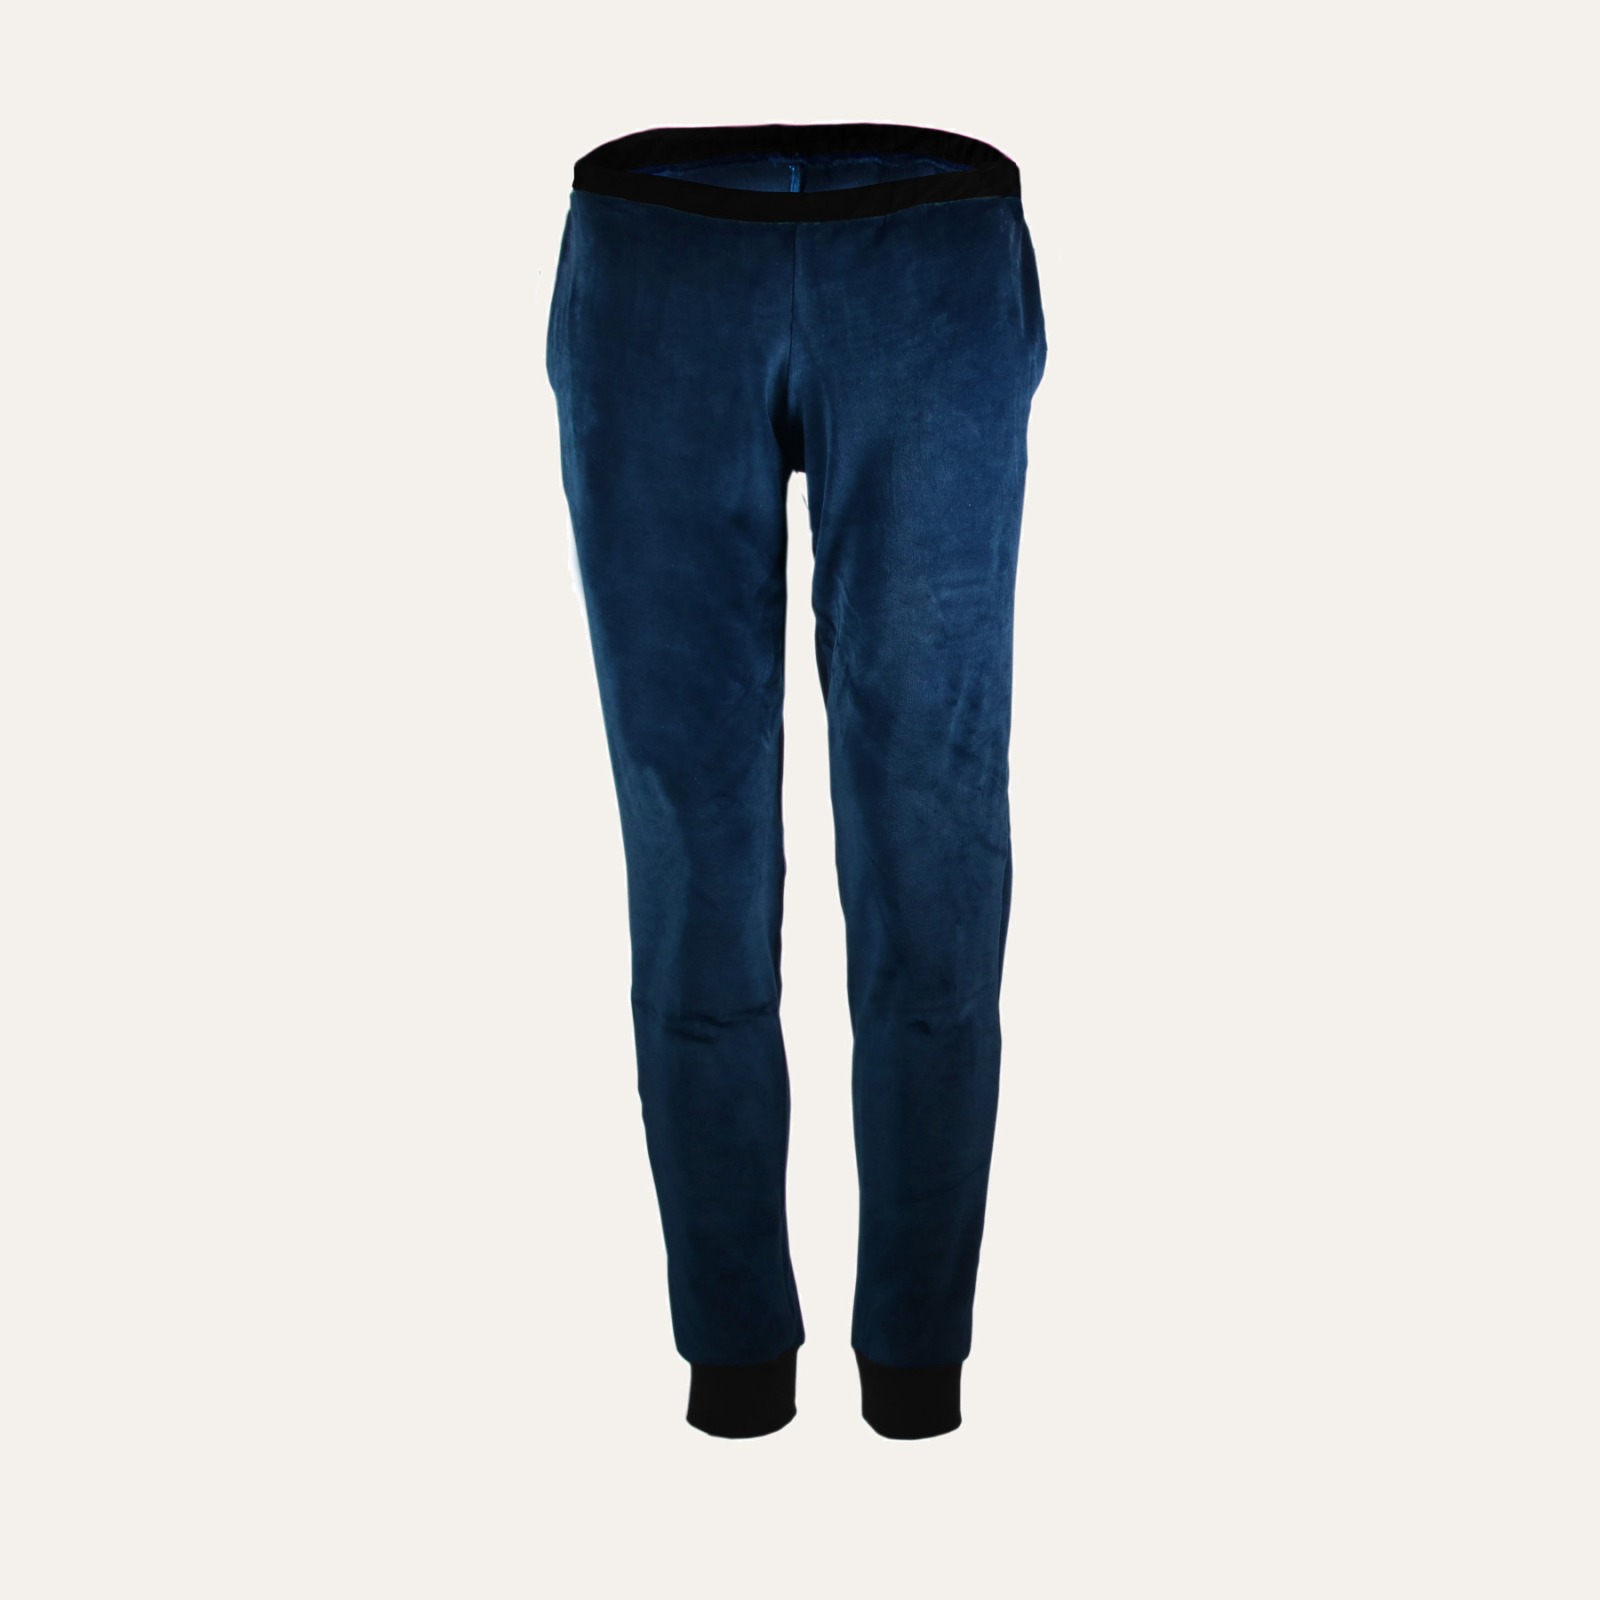 Organic velour pants Hygge blue / black